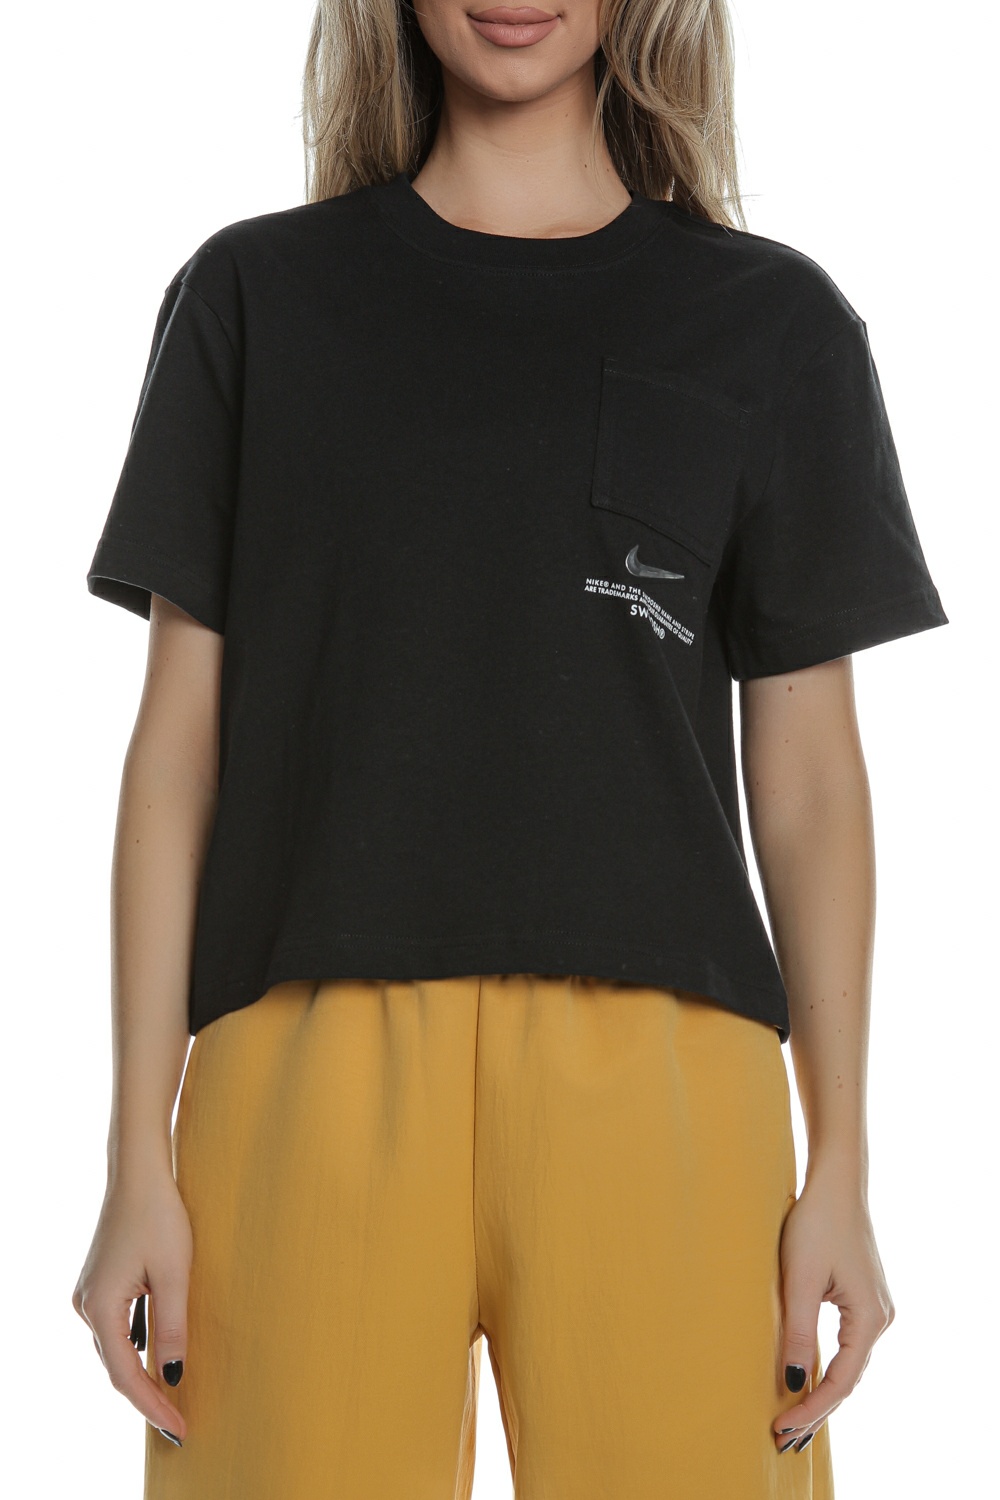 Γυναικεία/Ρούχα/Αθλητικά/T-shirt-Τοπ NIKE - Γυναικείο t-shirt NIKE NSW SWSH SS μαύρο